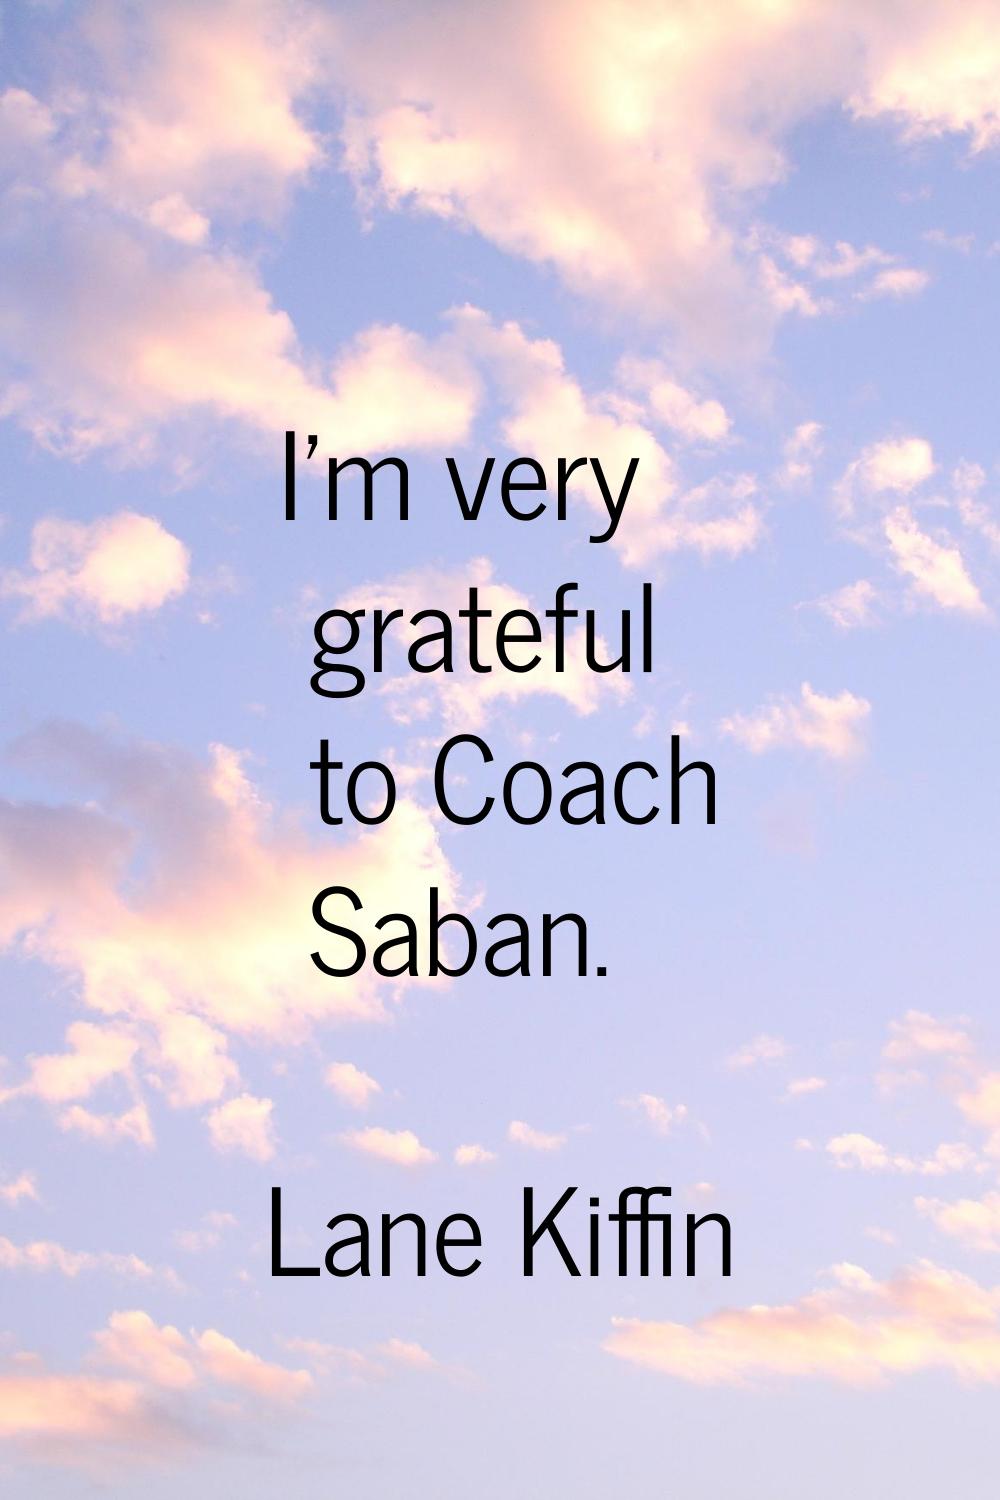 I'm very grateful to Coach Saban.